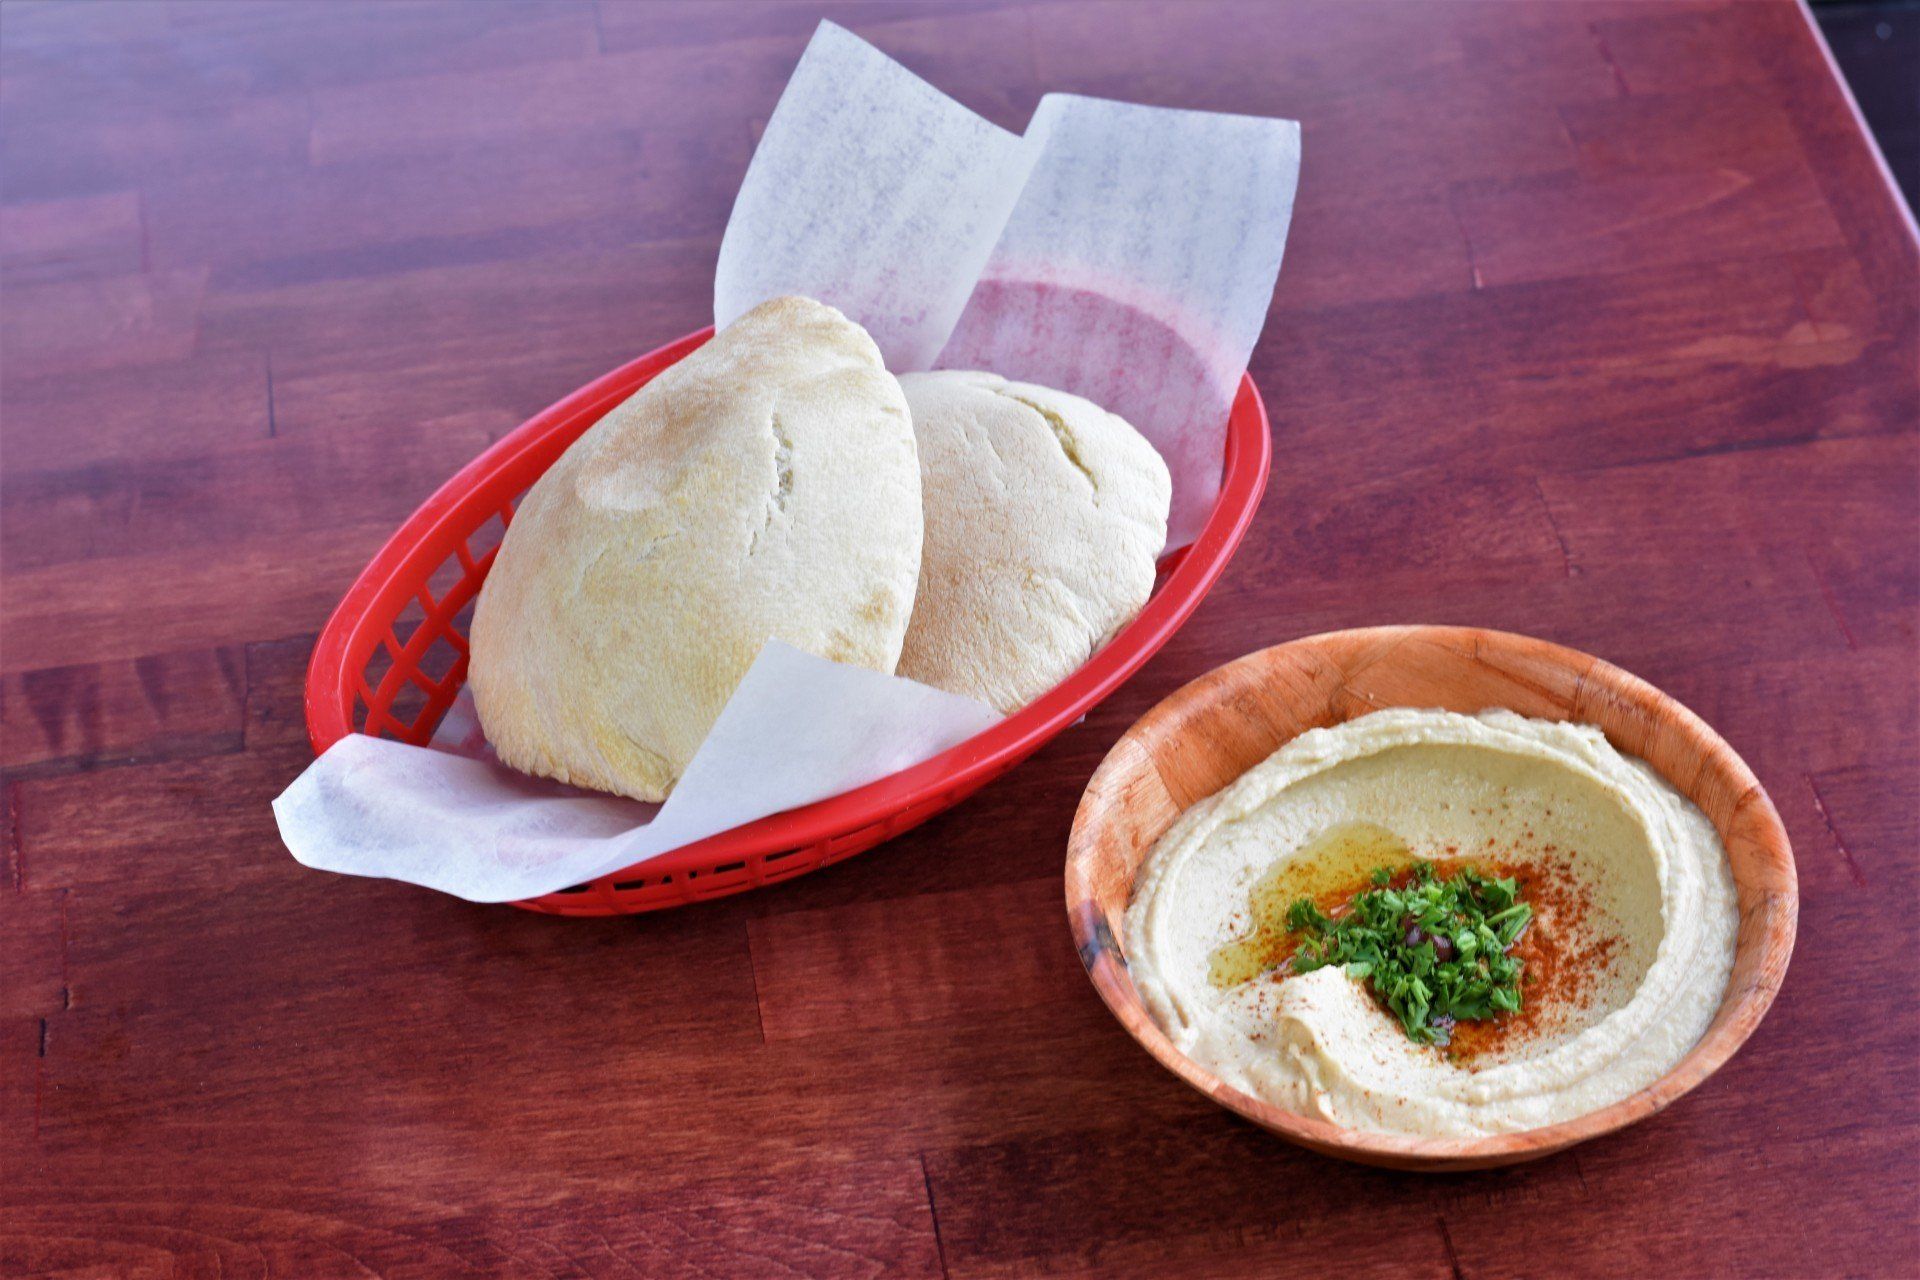 Best Hummus and Pita in Okemos/East Lansing